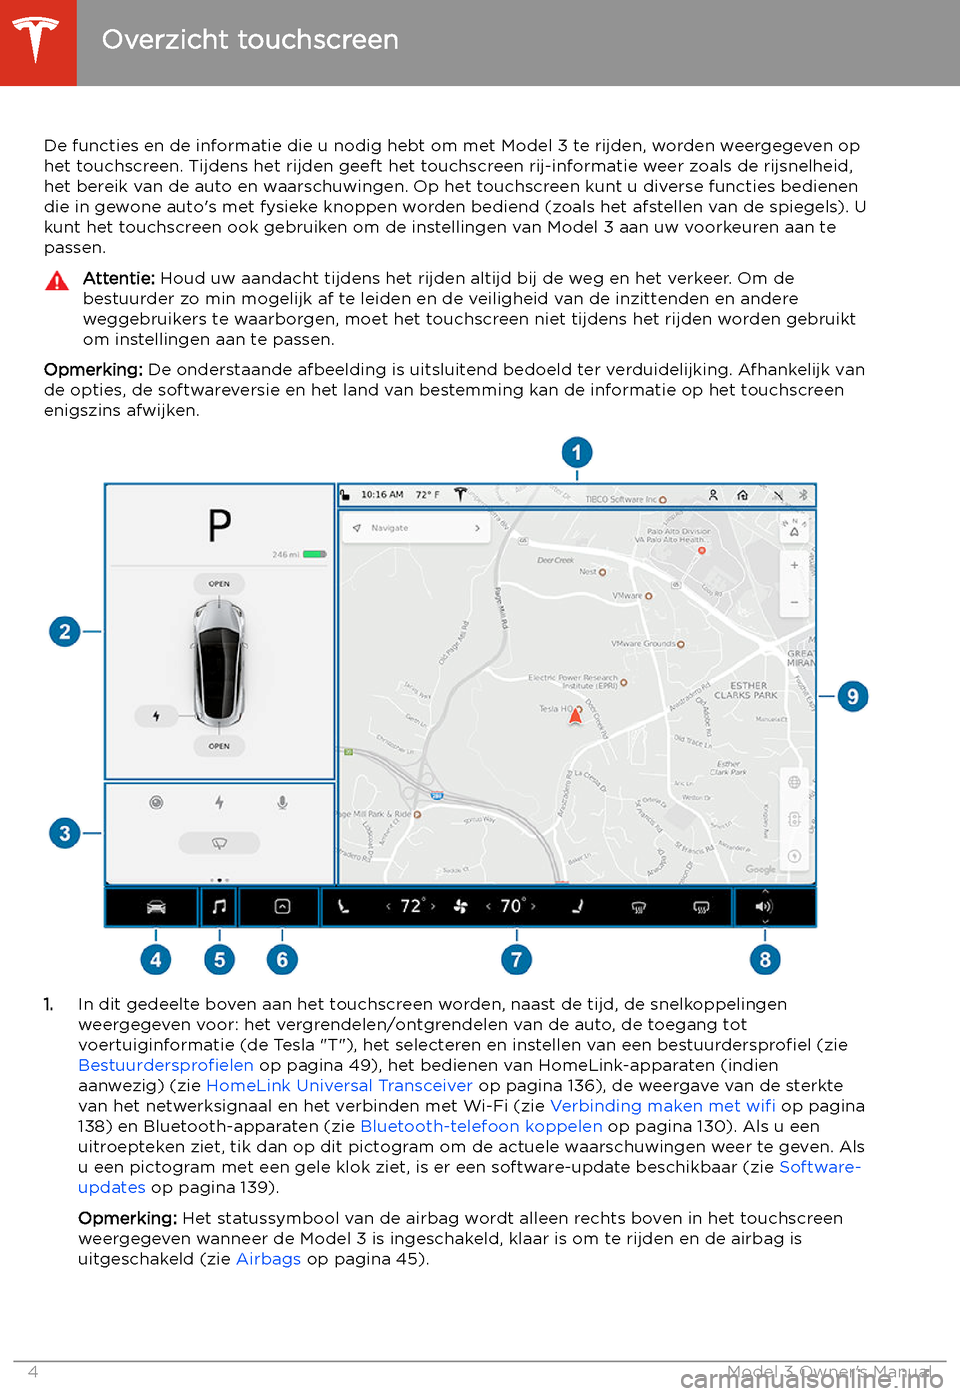 TESLA MODEL 3 2019  Handleiding (in Dutch) Overzicht touchscreen
De functies en de informatie die u nodig hebt om met Model 3 te rijden, worden weergegeven op het touchscreen. Tijdens het rijden geeft het touchscreen rij-informatie weer zoals 